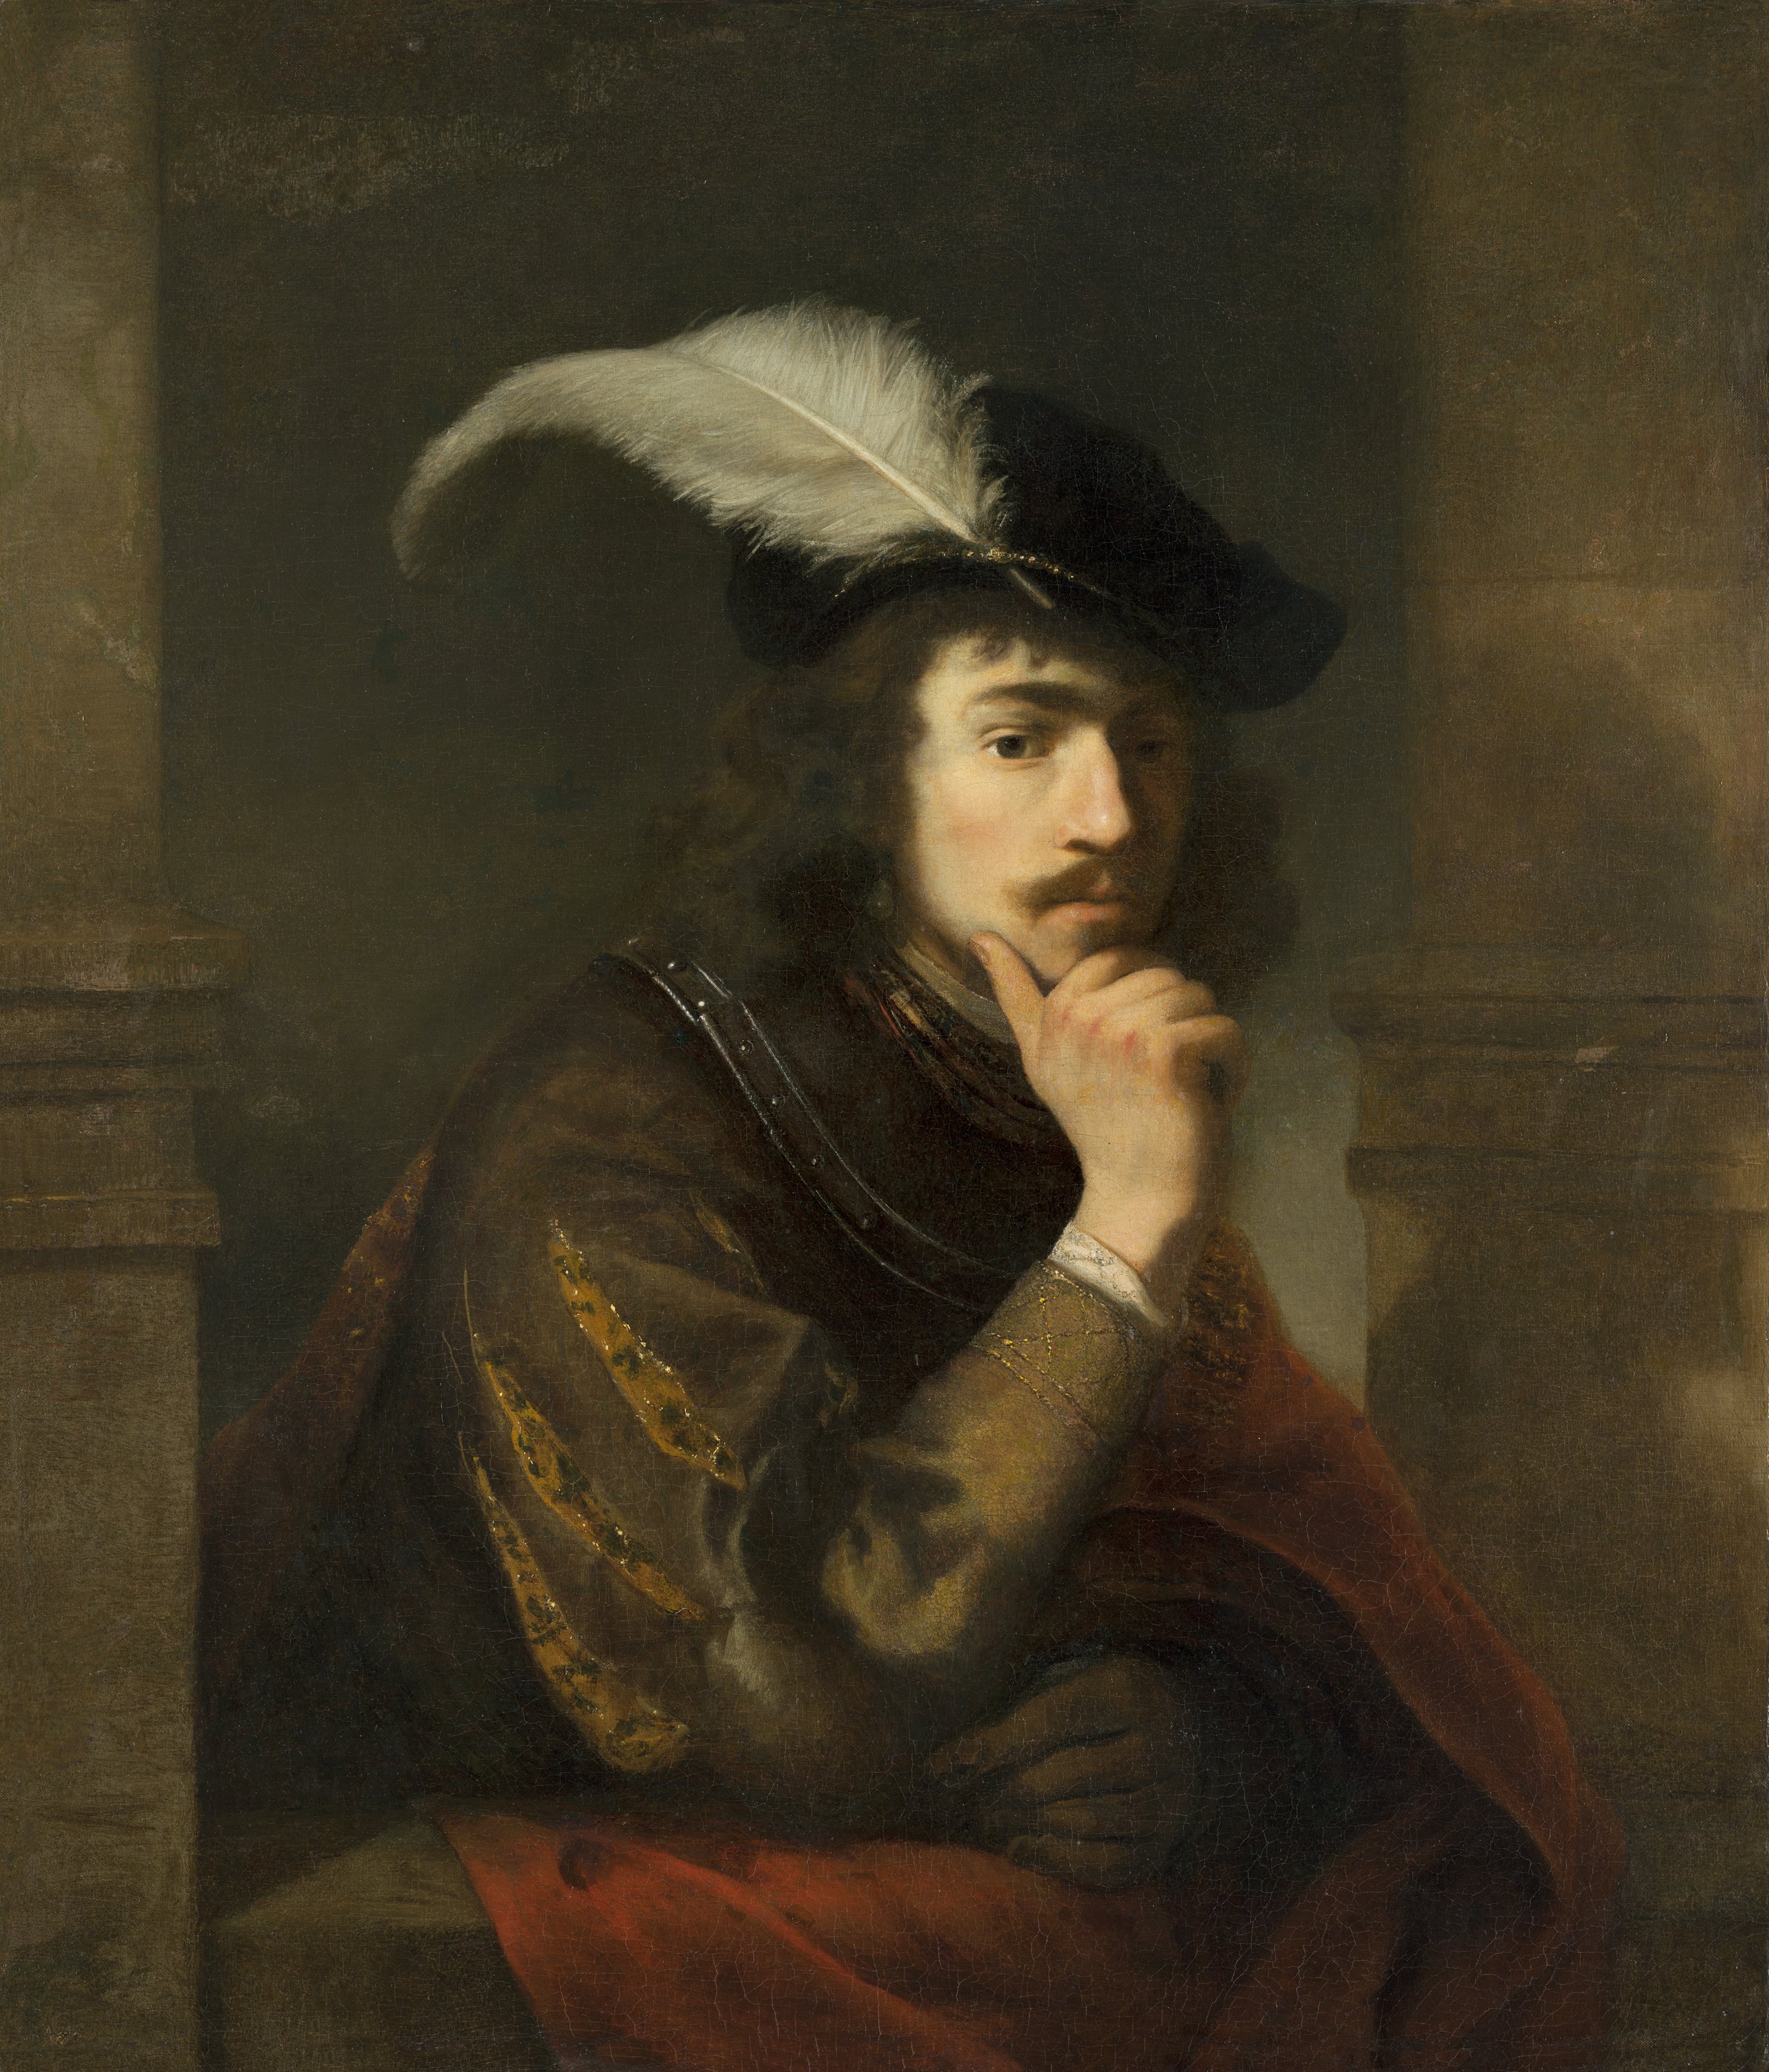 Young Man in a Feathered Cap. Joven con una pluma en la gorra, c. 1647